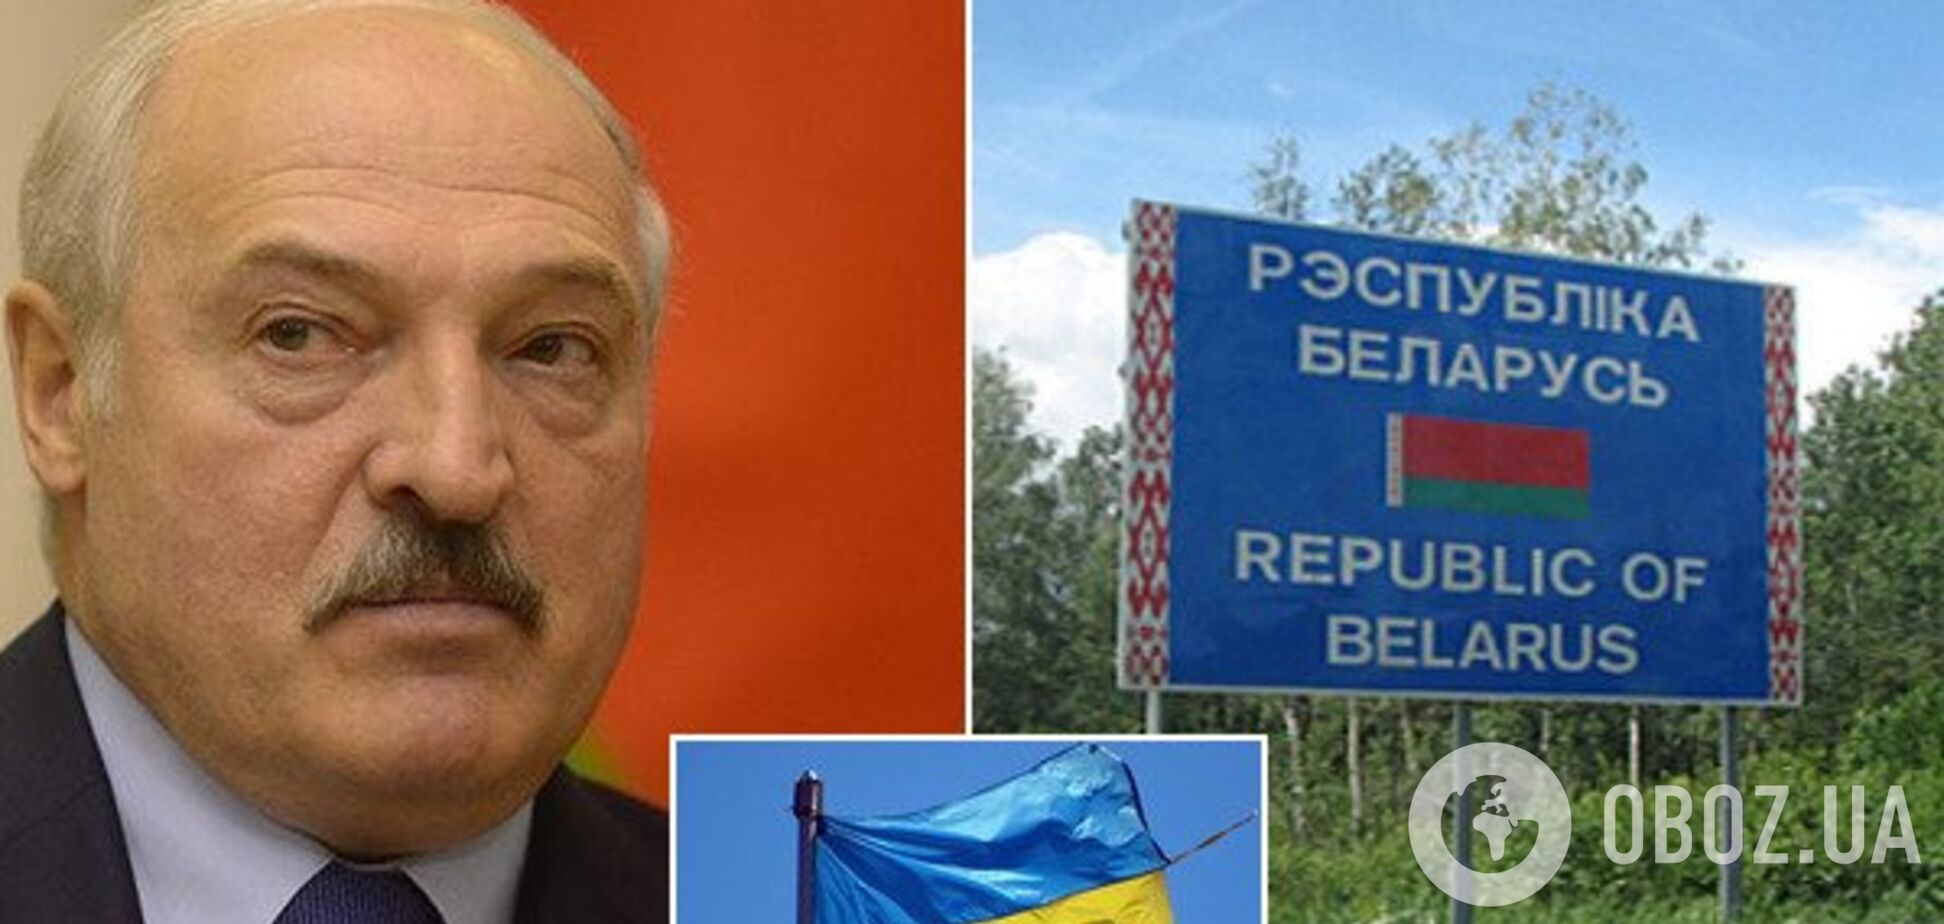 'Изъяли целый арсенал': в Беларуси разгорелся новый скандал вокруг оружия из Украины